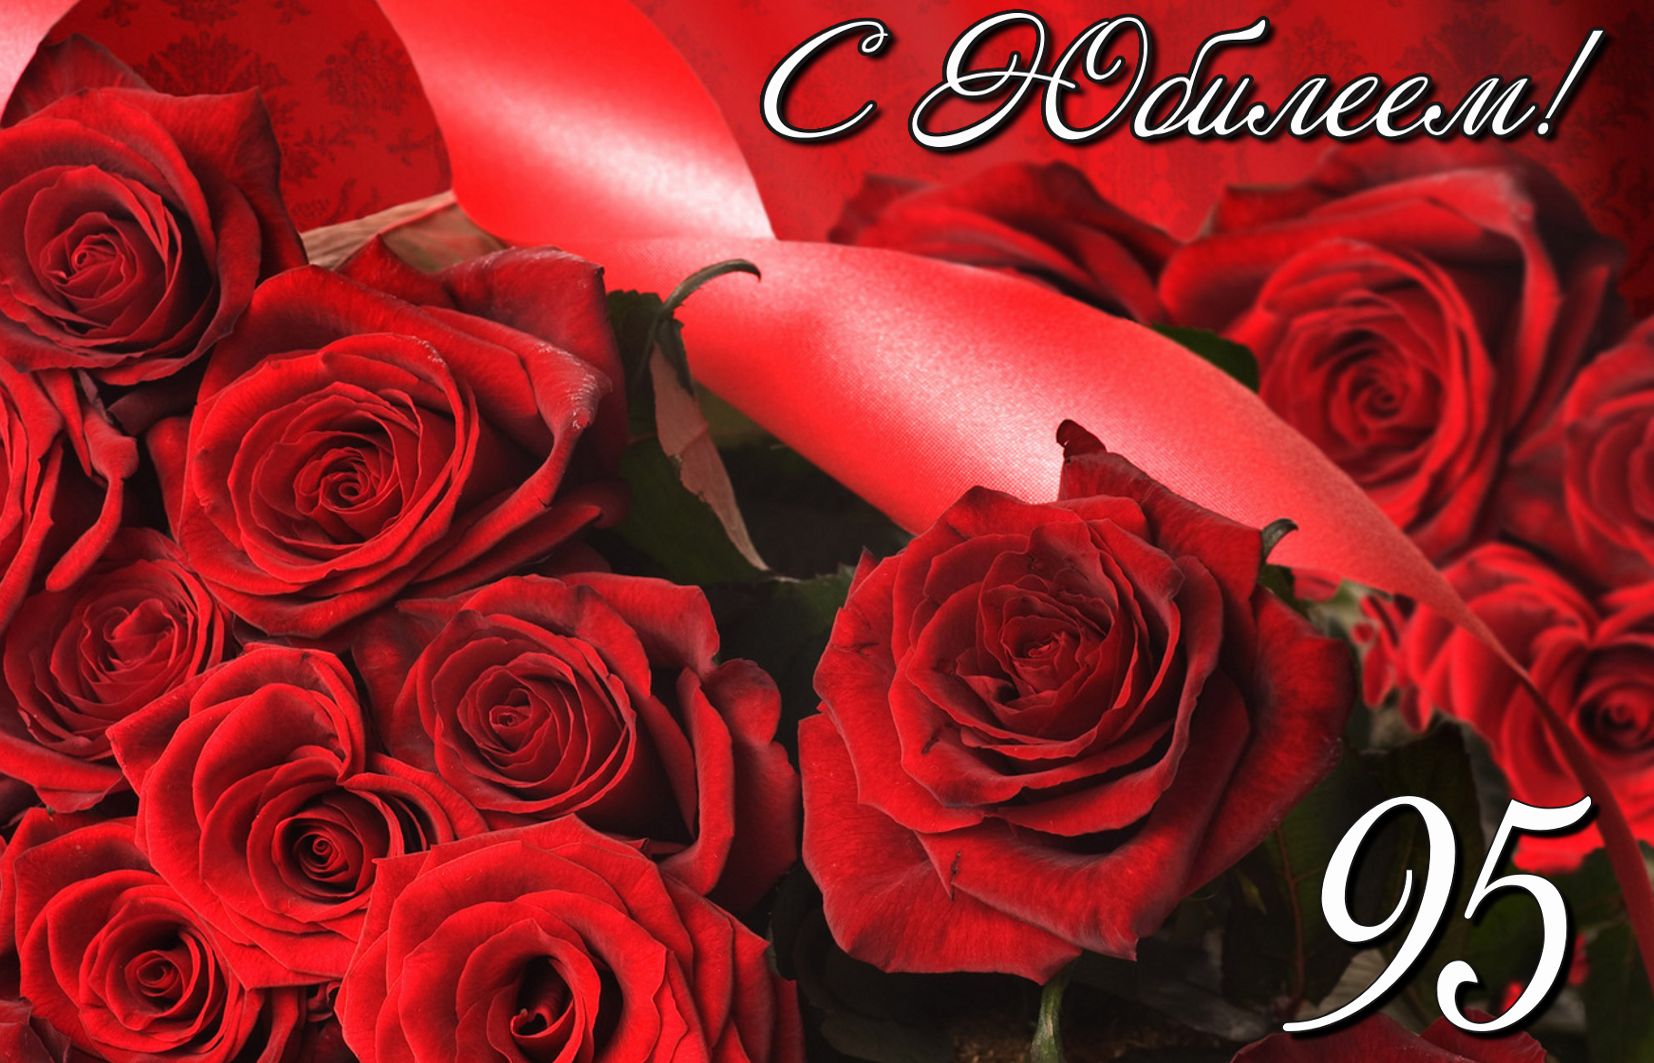 Розы в красном оформлении на юбилей 95 лет